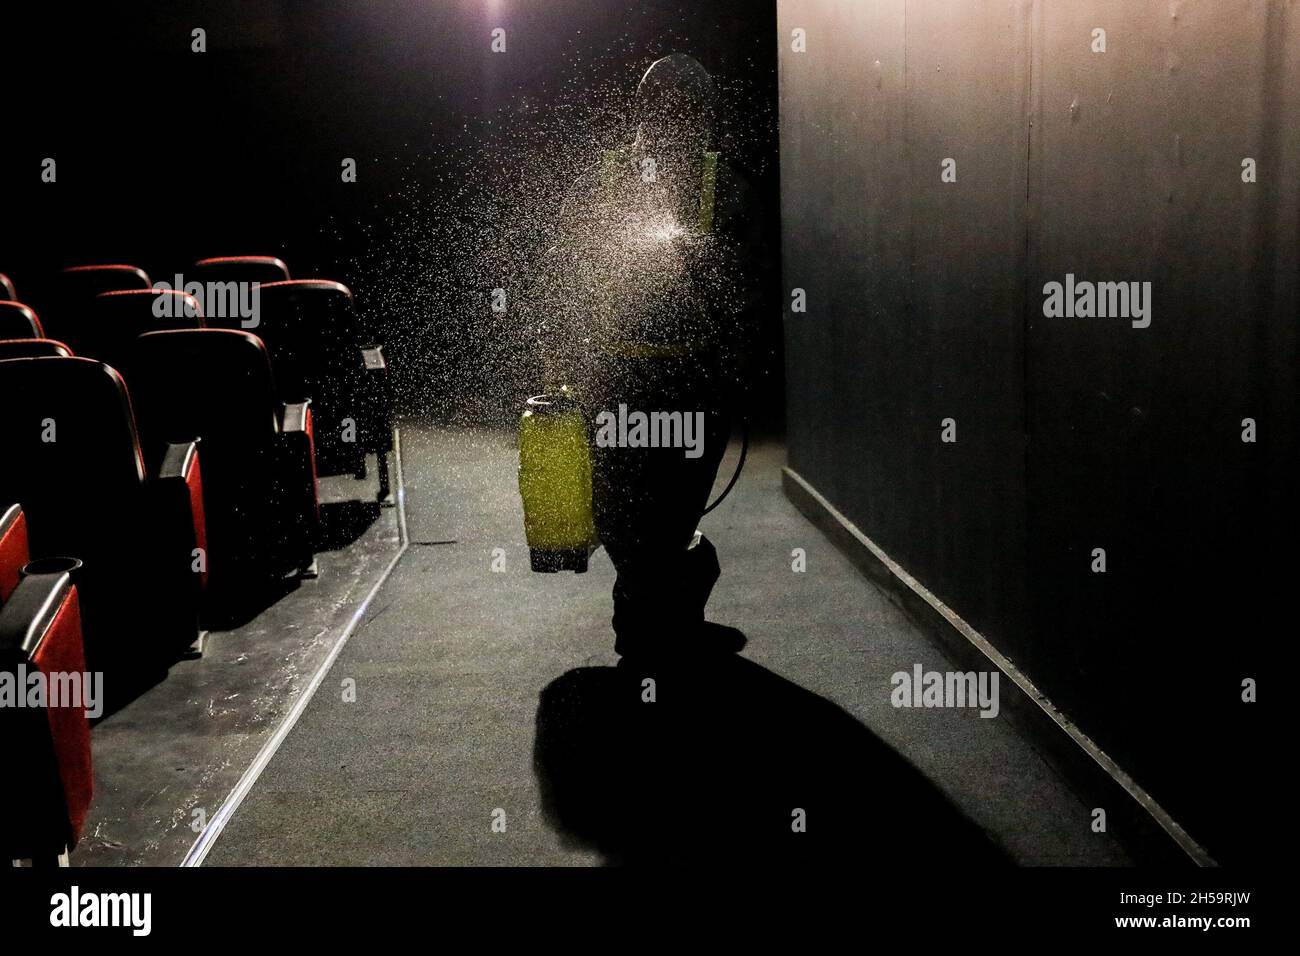 Un travailleur portant une trousse de protection vaporise un désinfectant pour assainir un cinéma alors que les centres commerciaux se préparent à rouvrir le centre commercial Robinsons Galleria à Quezon City, dans le Grand Manille, aux Philippines. Banque D'Images